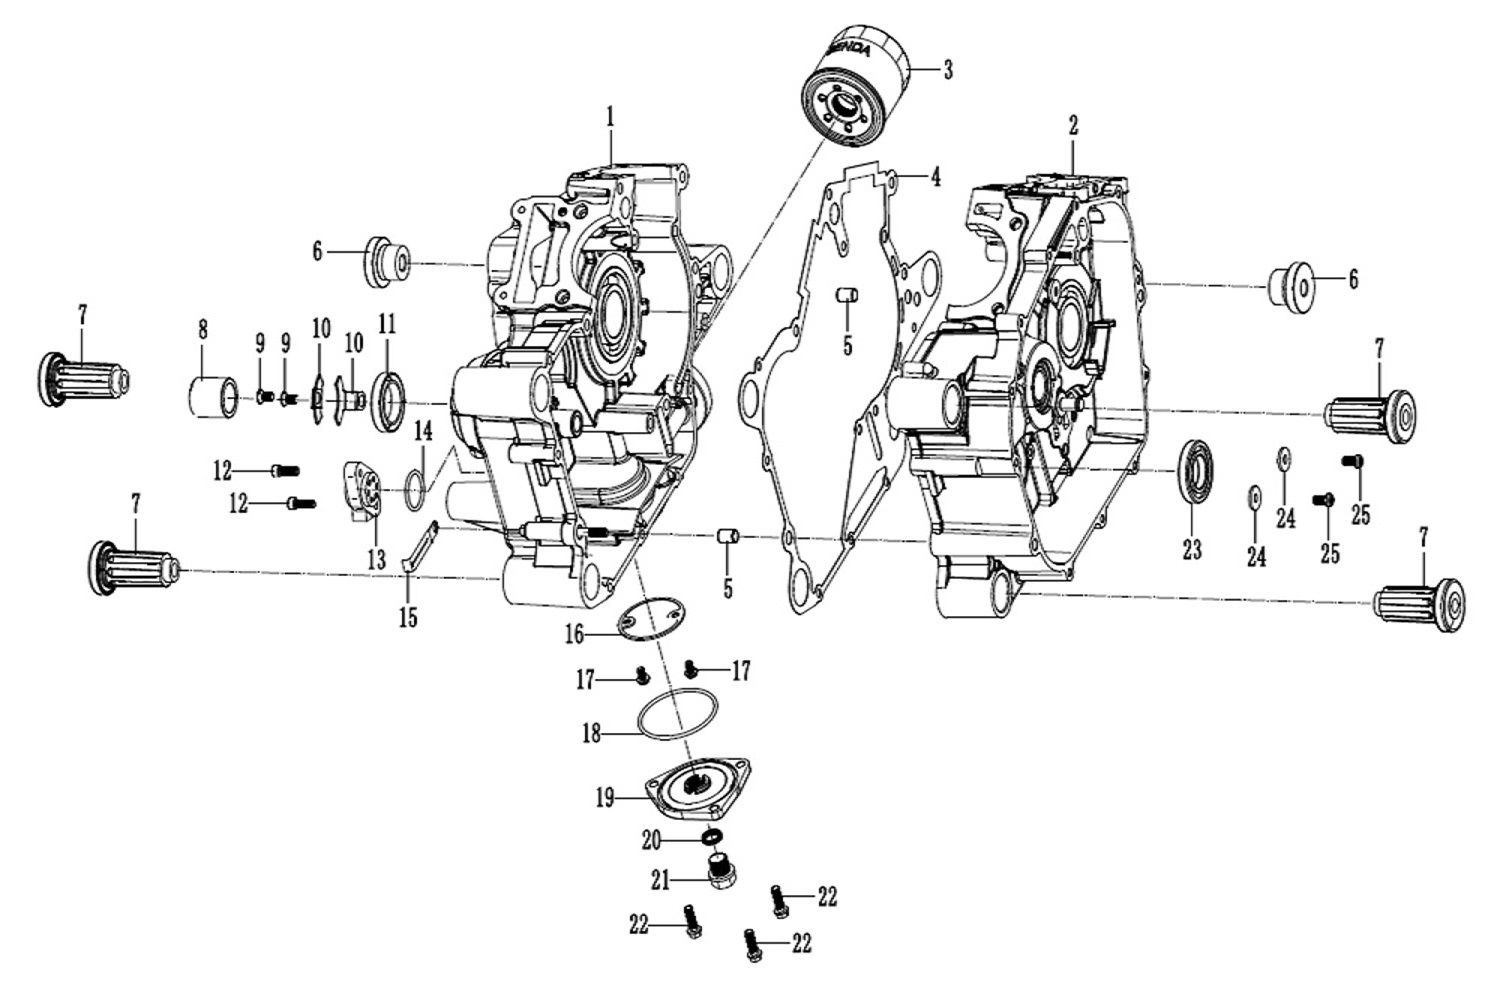 13 - Vue Carter moteur centraux                                                                                                 